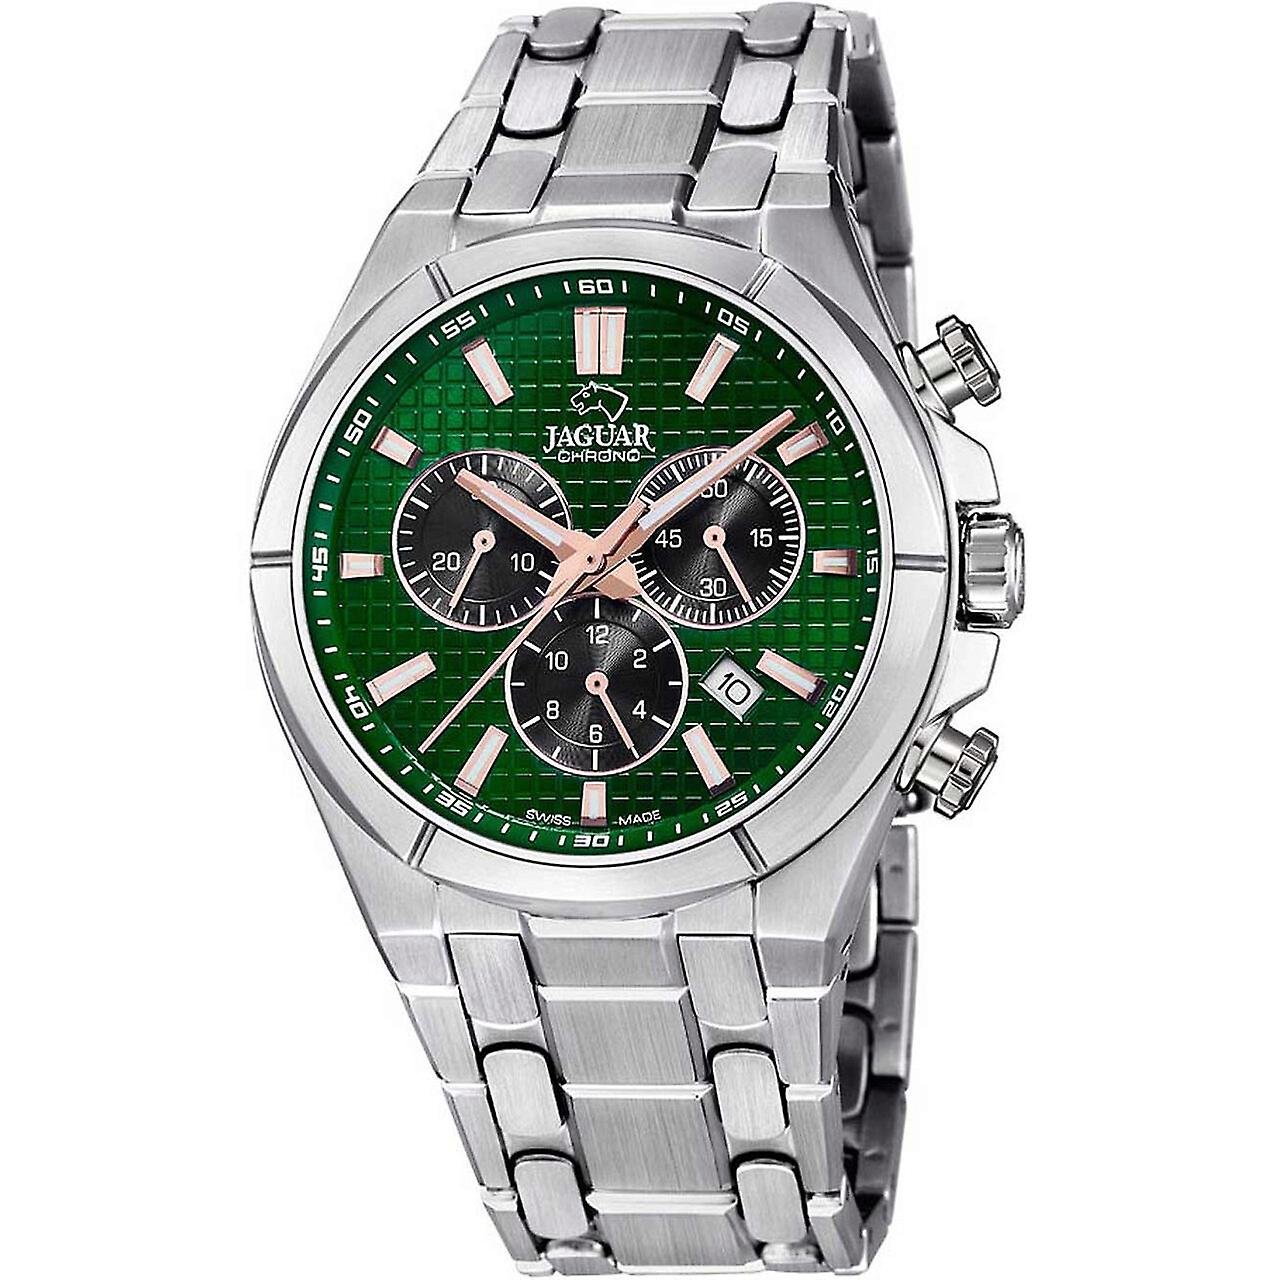 Reloj Jaguar Acamar (AY-kuh-mar) J695/3 hombre - Francisco Ortuño